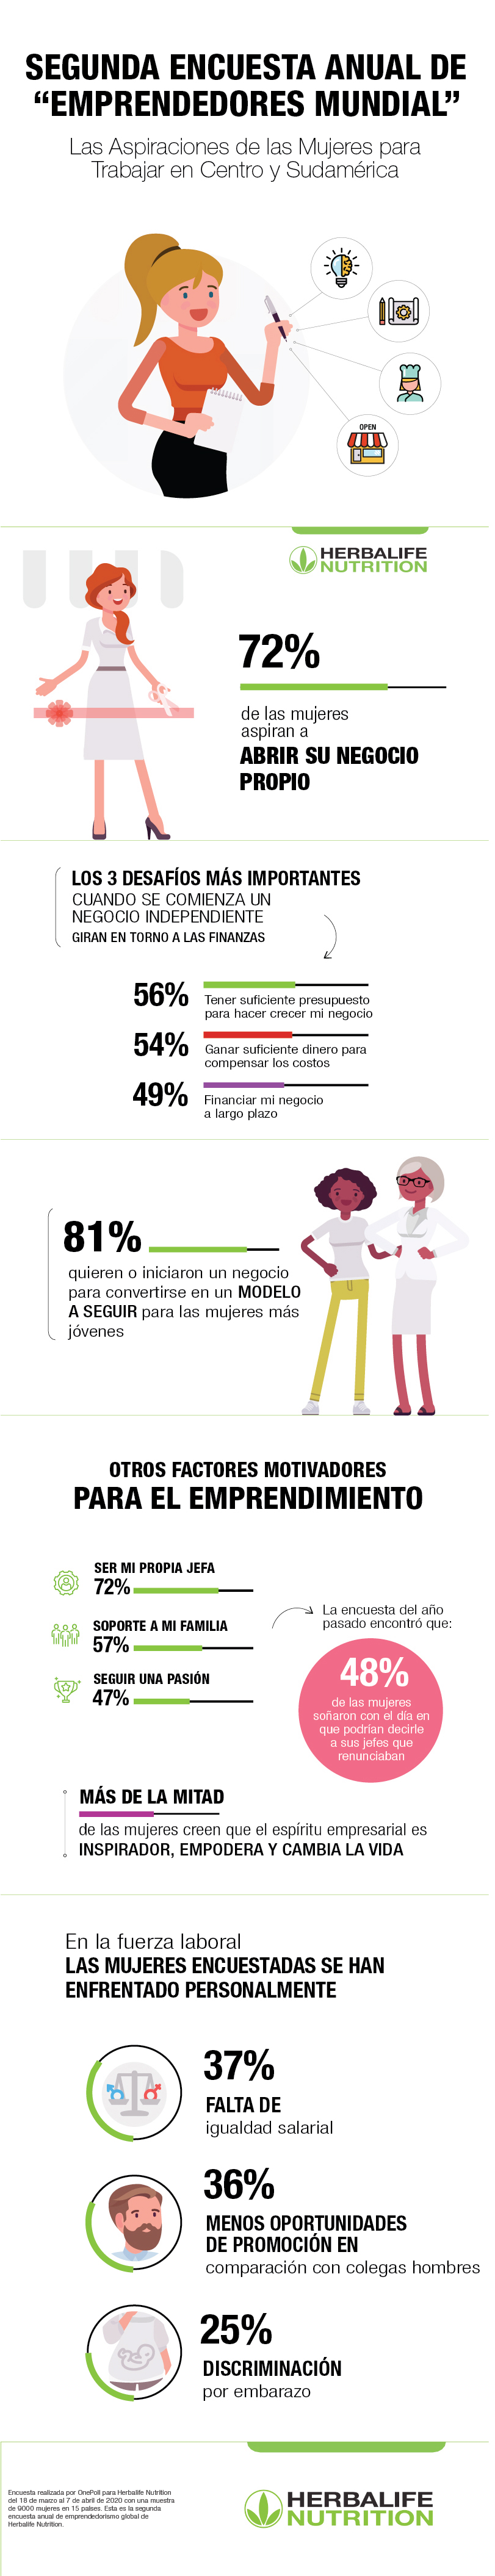 infografia-Emprendedores- Centro y Sudamérica